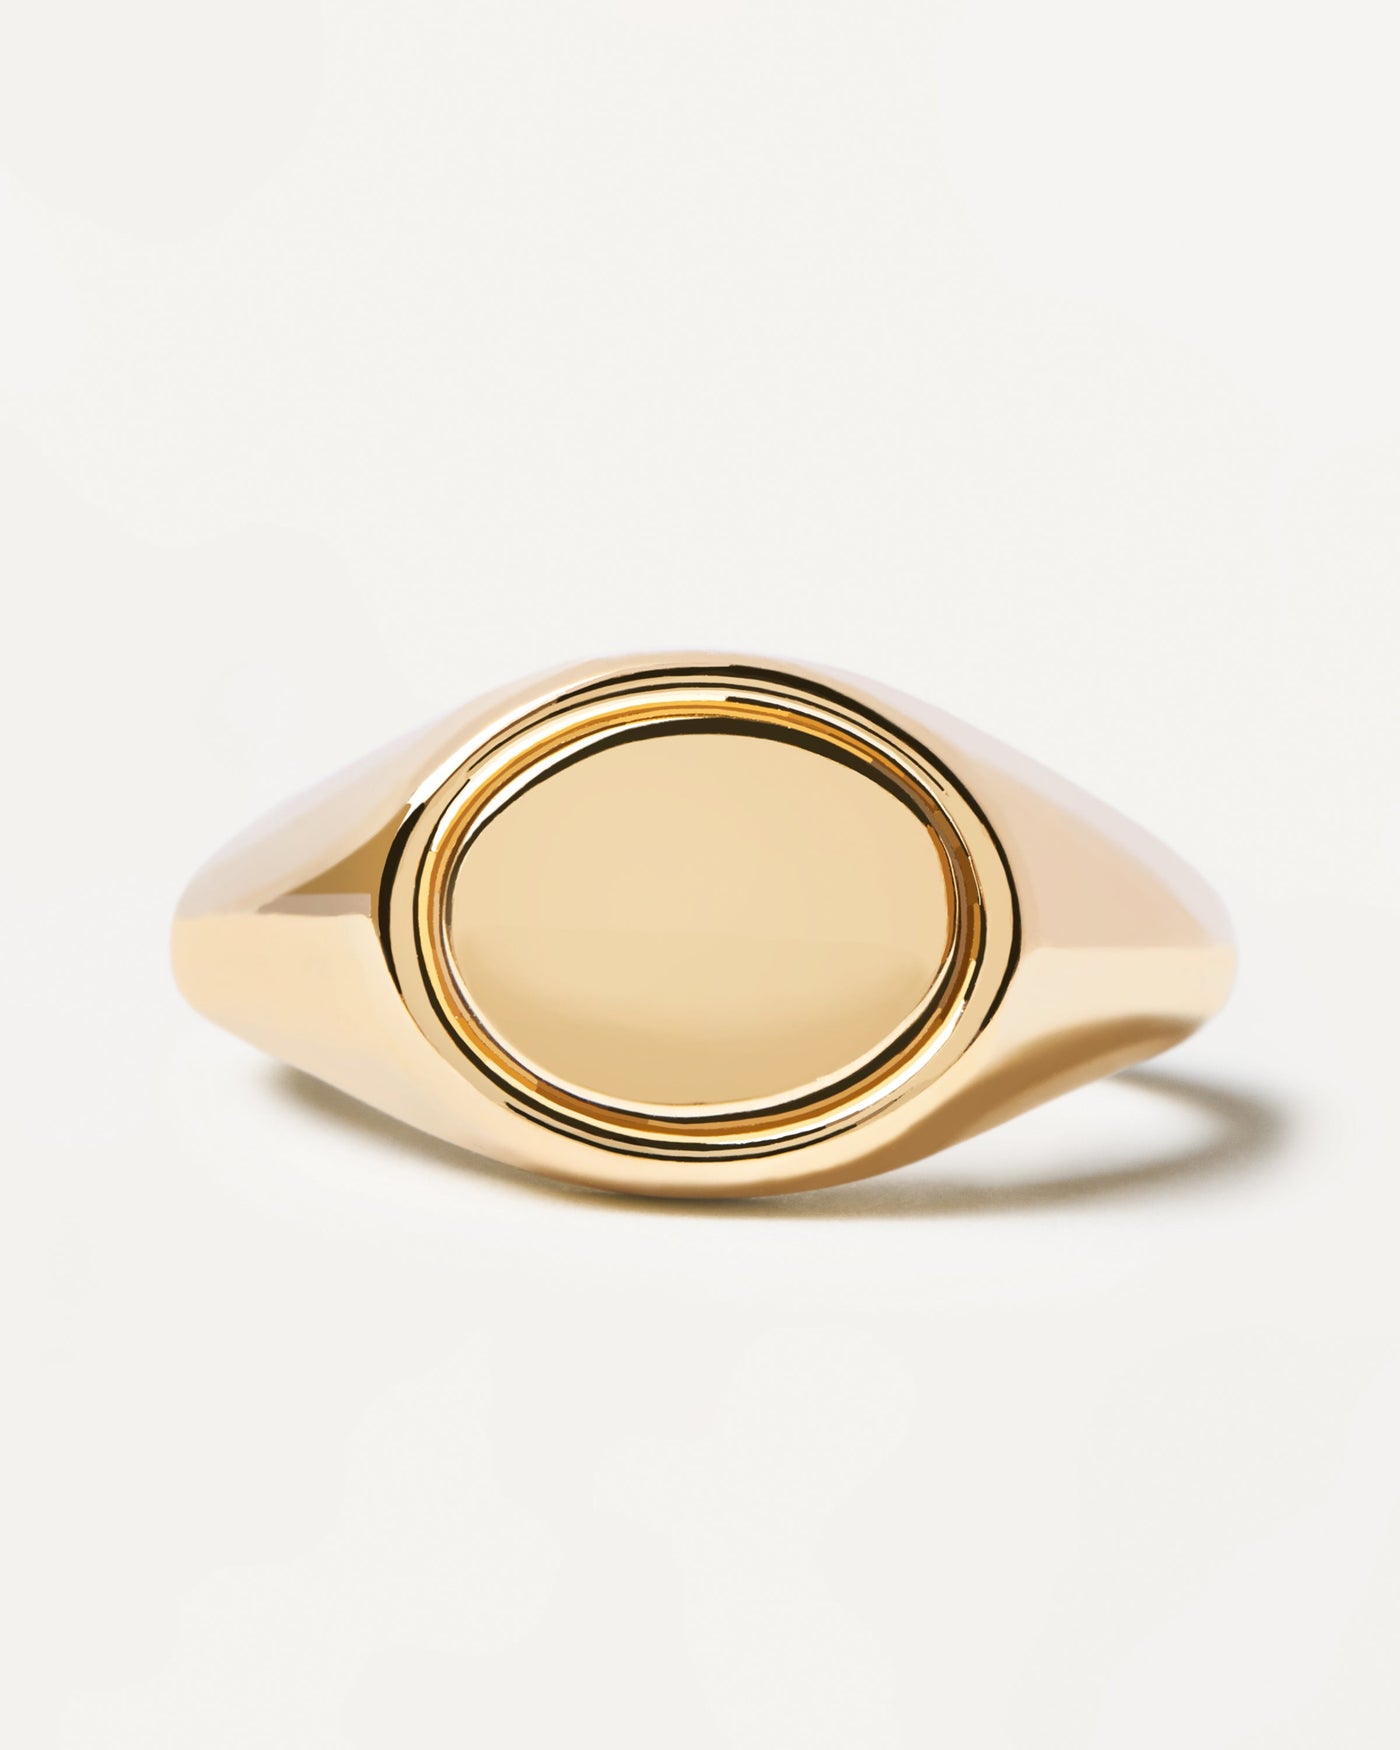 Siegel Ring. Gravierbarer, ovaler Siegelring aus vergoldetem Silber. Erhalten Sie die neuesten Produkte von PDPAOLA. Geben Sie Ihre Bestellung sicher auf und erhalten Sie diesen Bestseller.